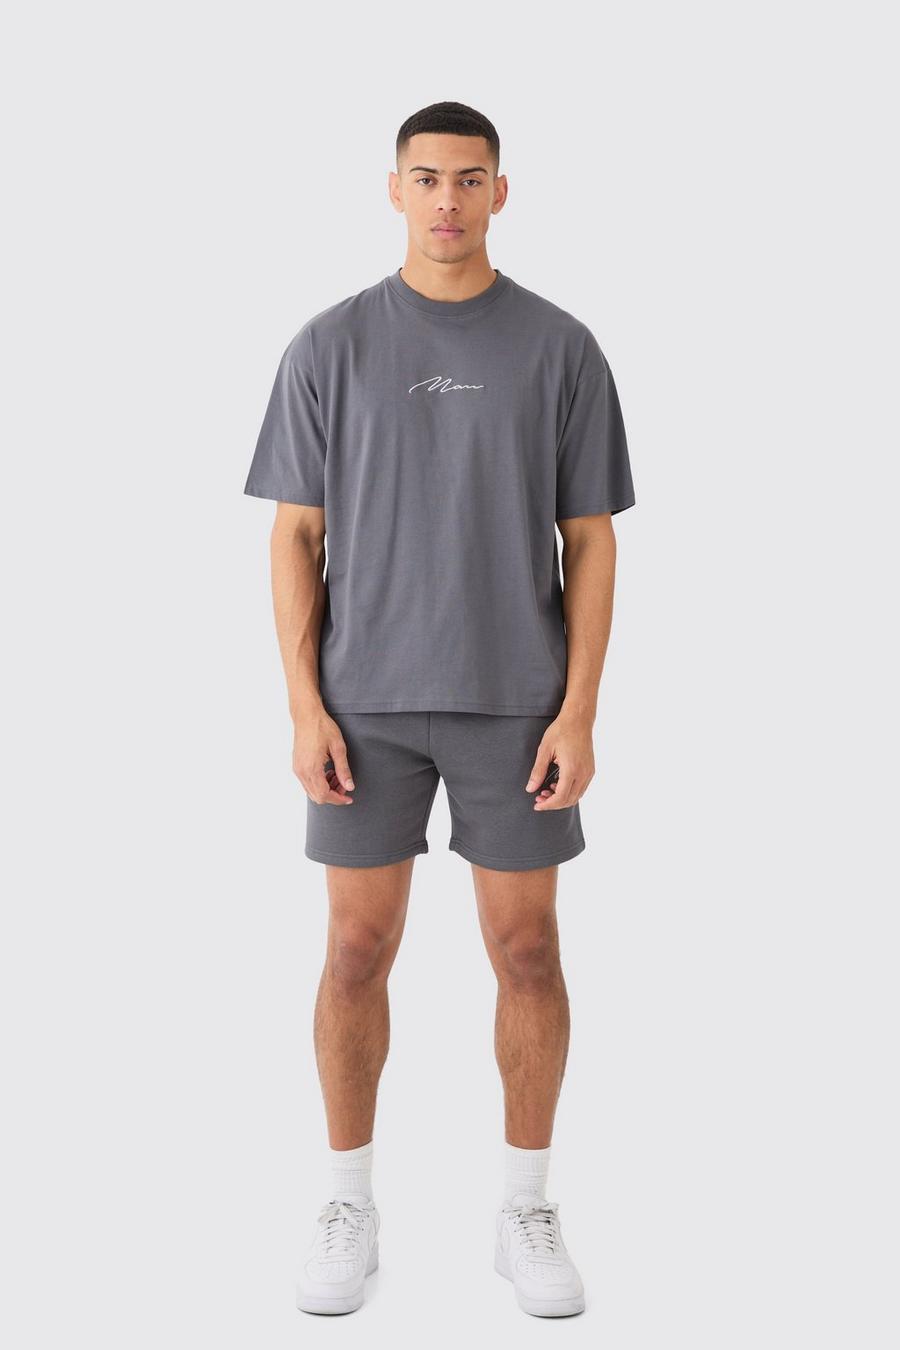 Ensemble avec t-shirt et short - MAN, Charcoal